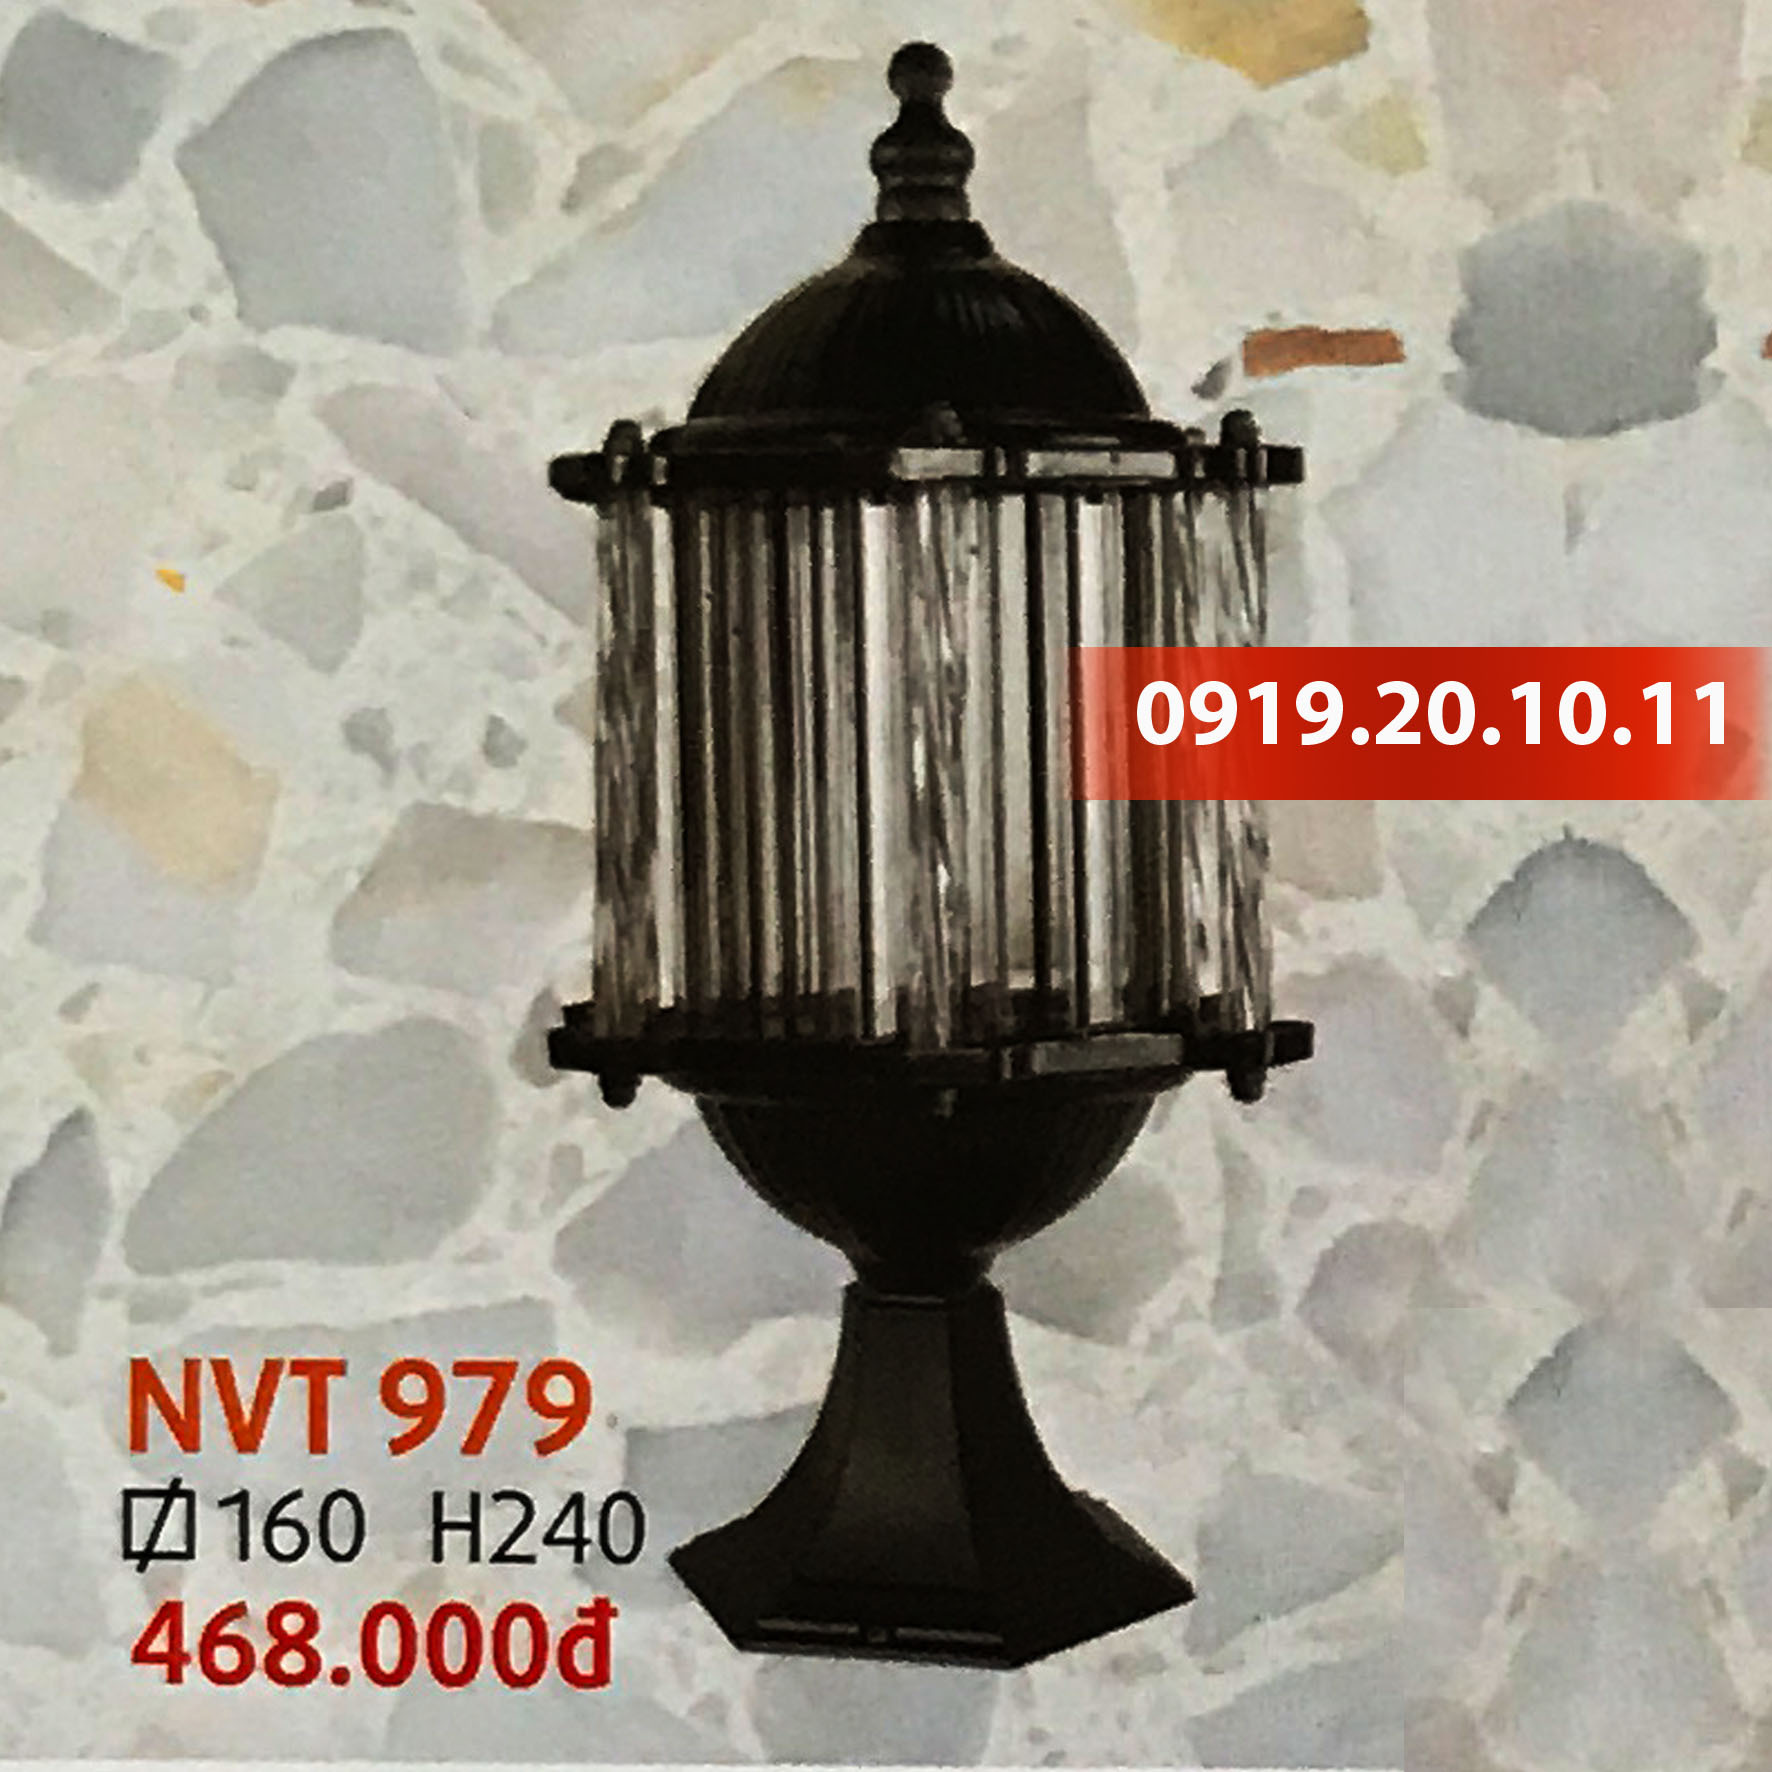 Đèn trang trí trụ cổng Netviet NVT979